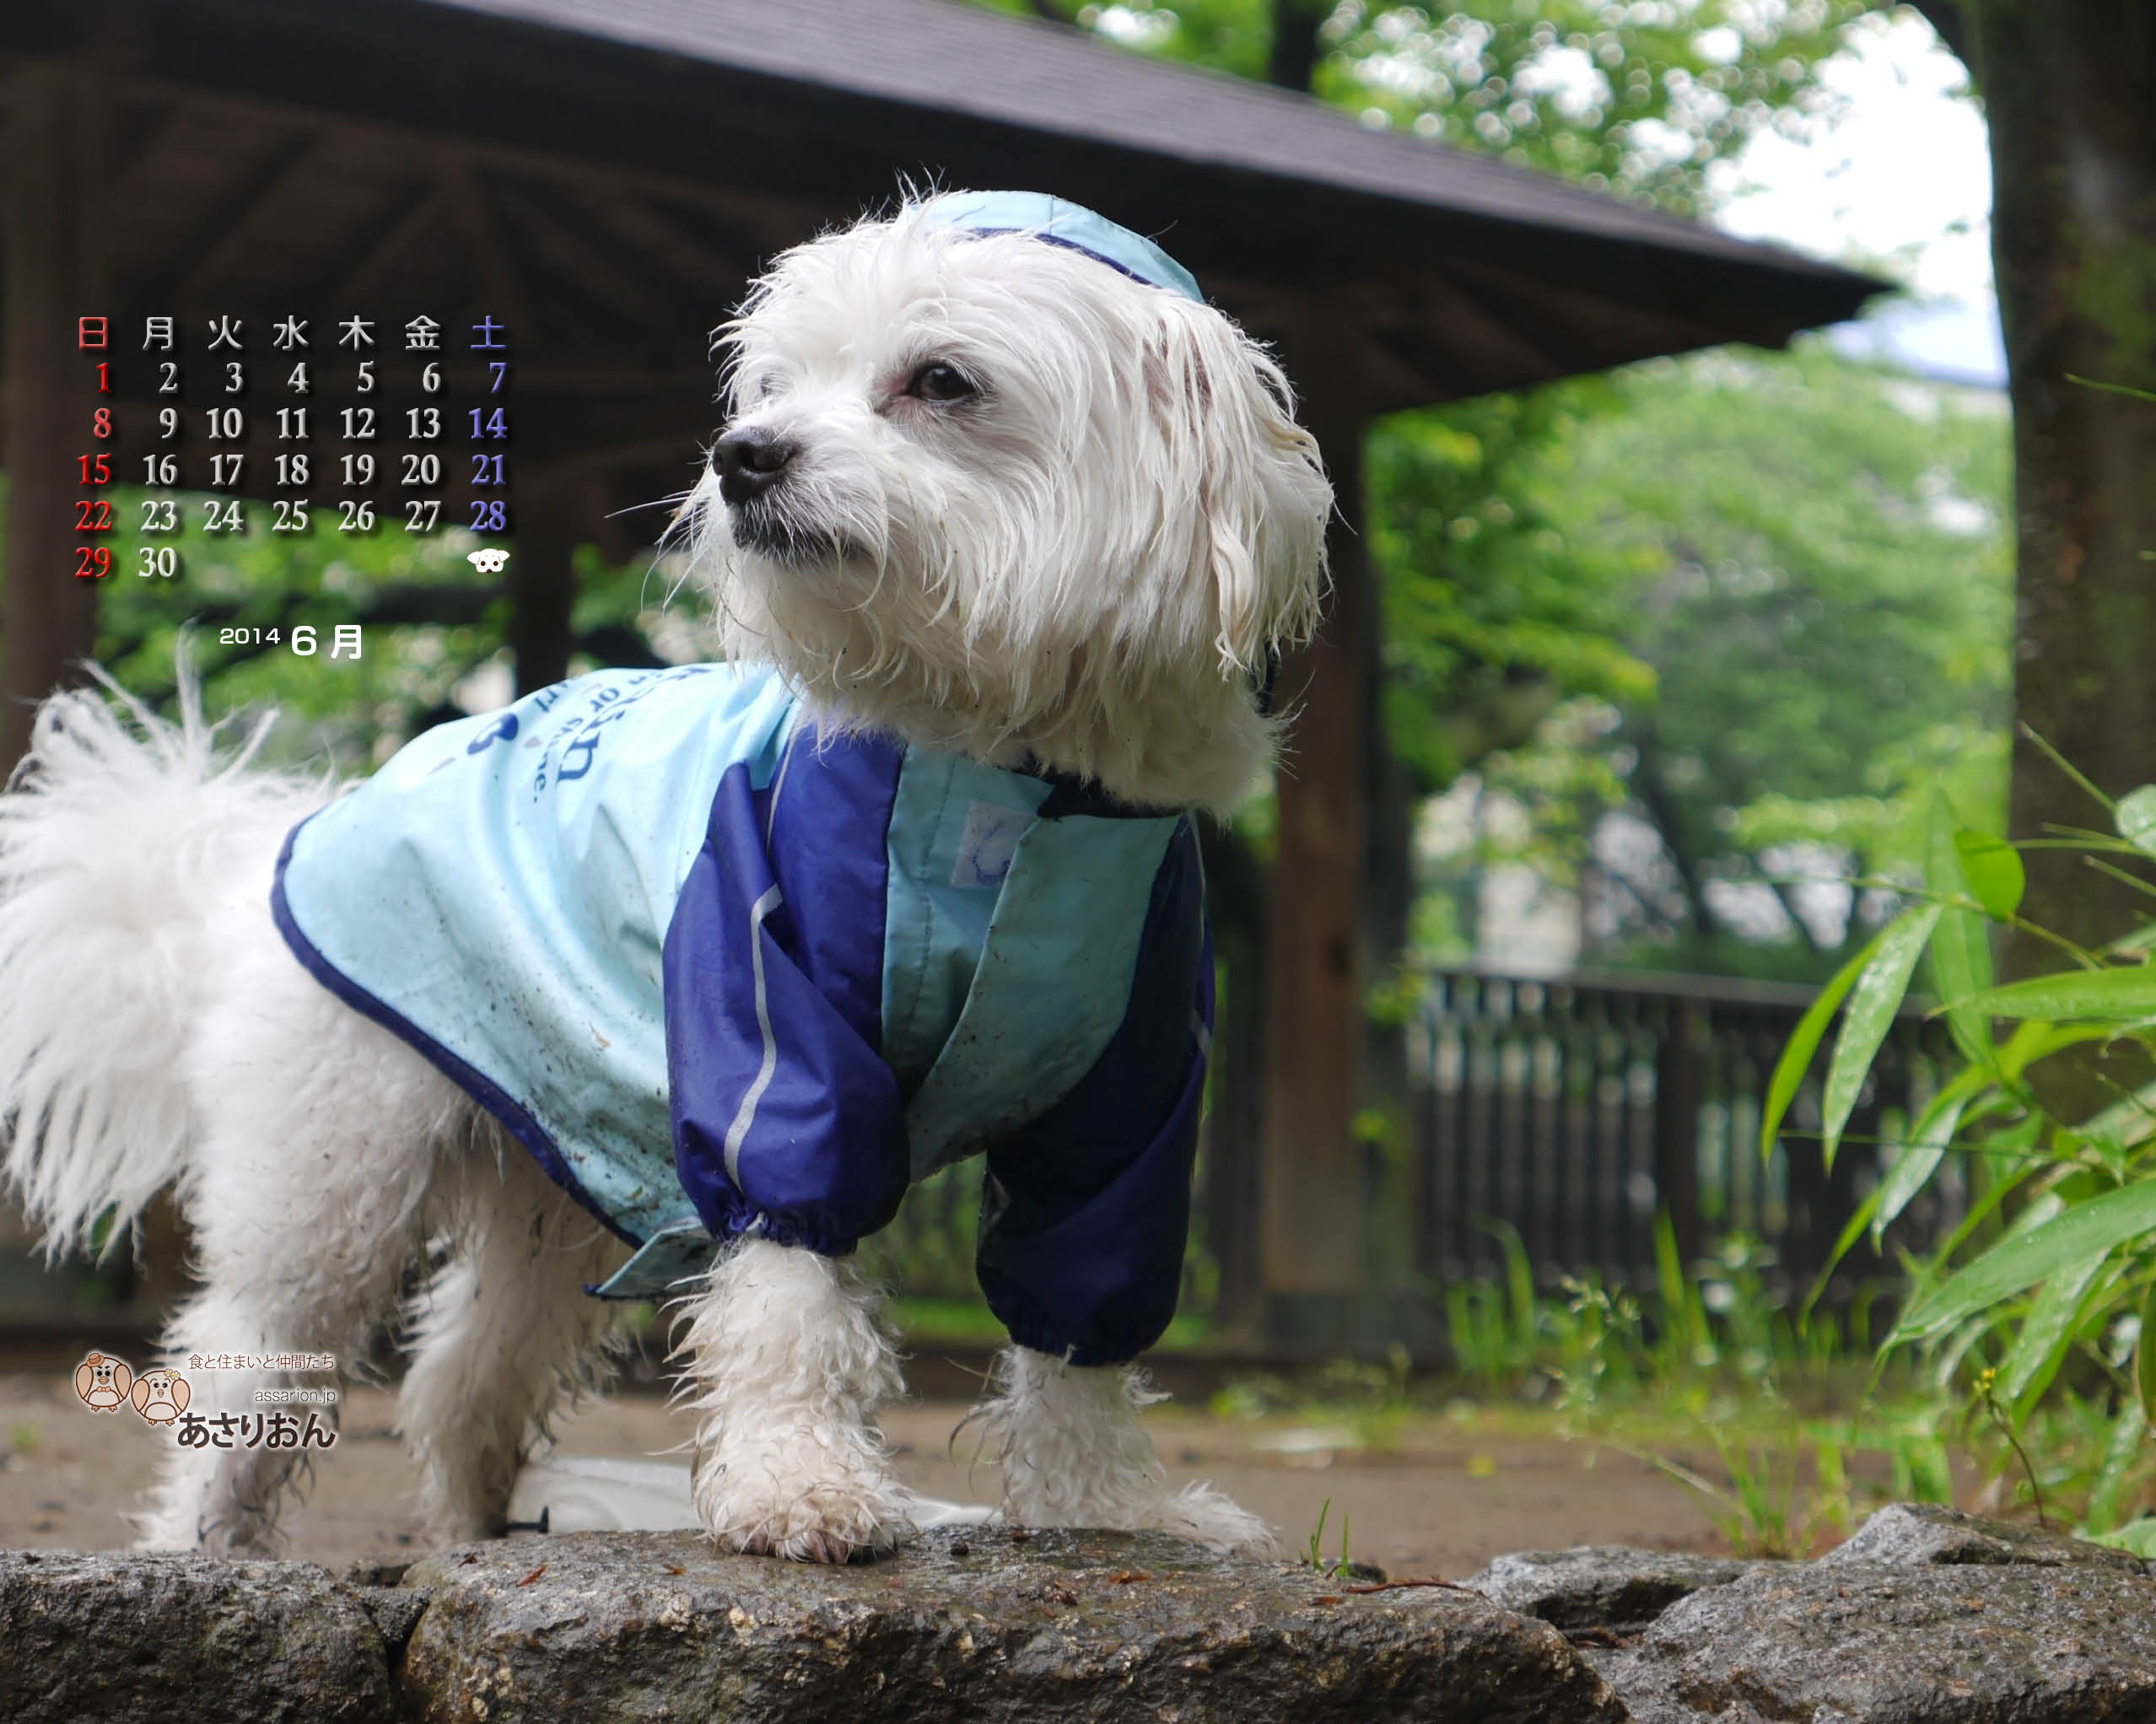 2014_06_calendar_l